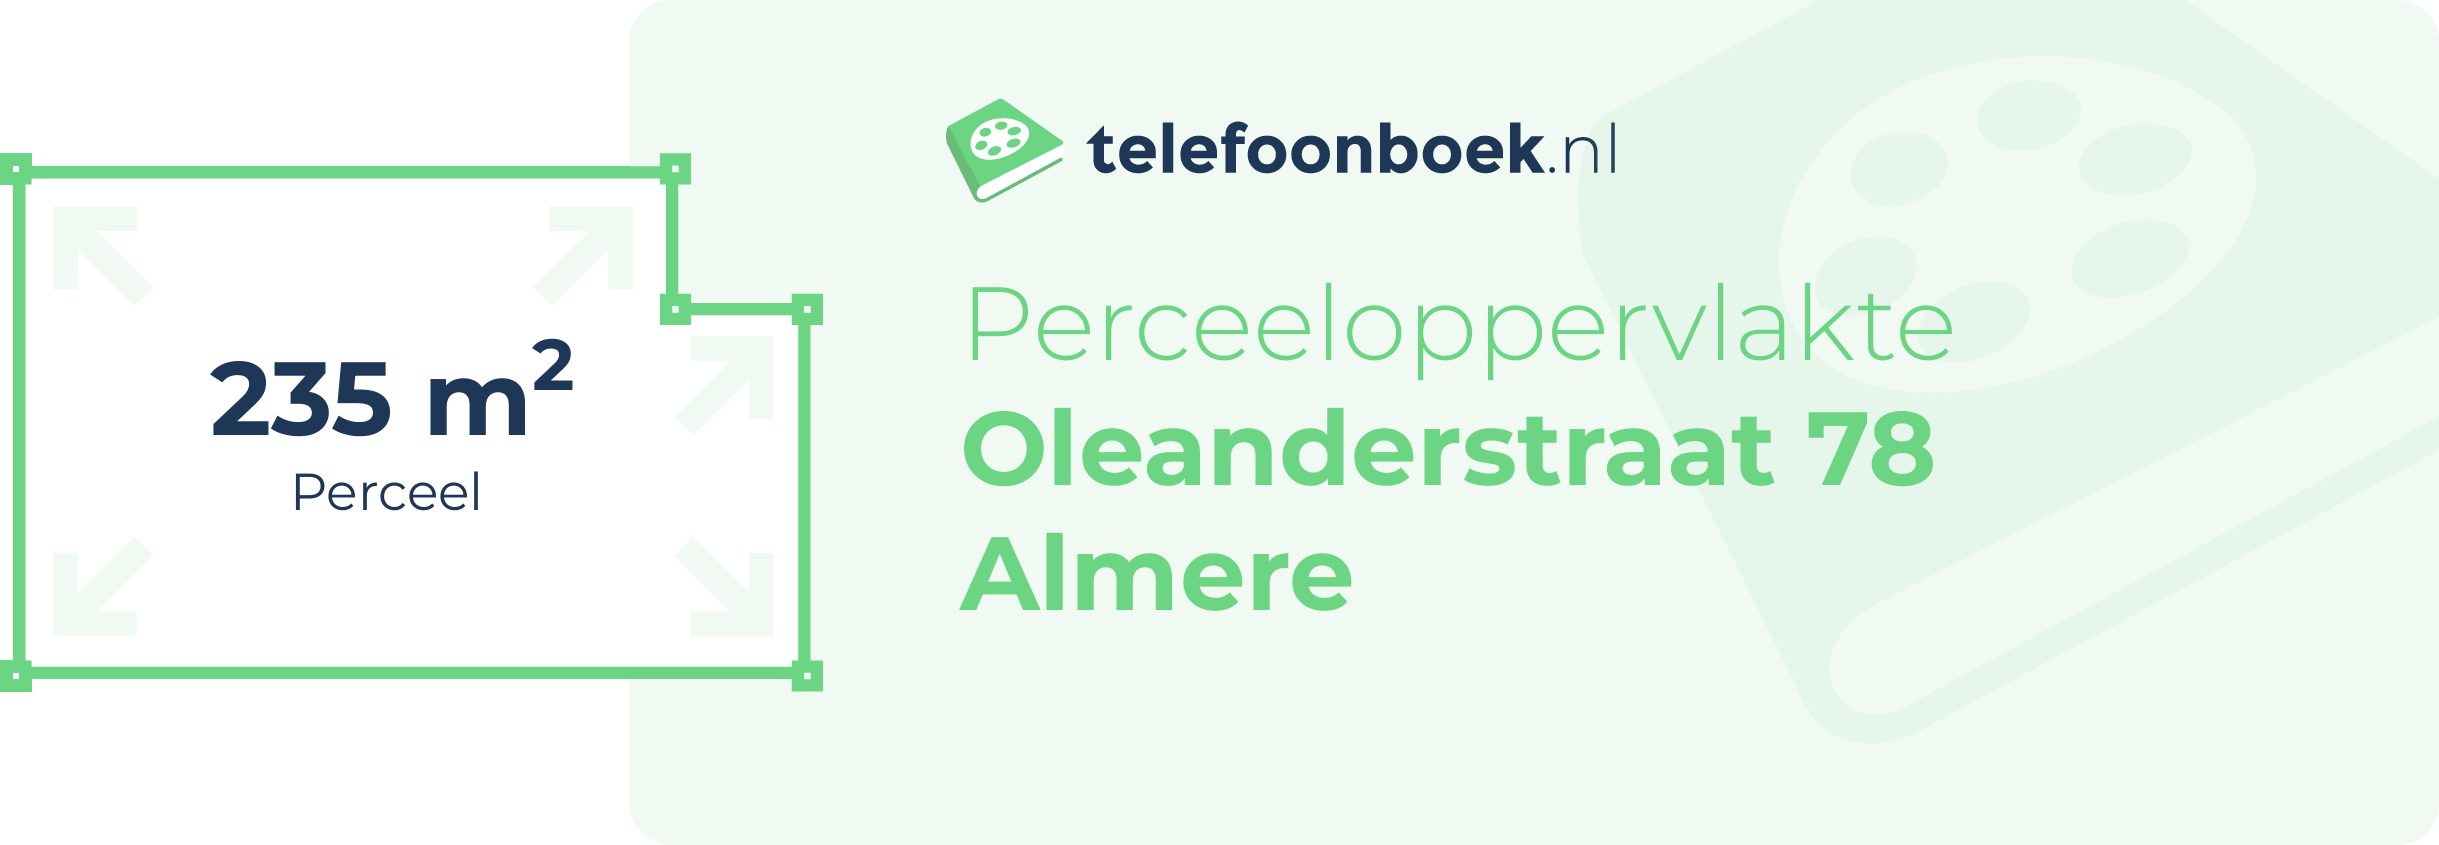 Perceeloppervlakte Oleanderstraat 78 Almere